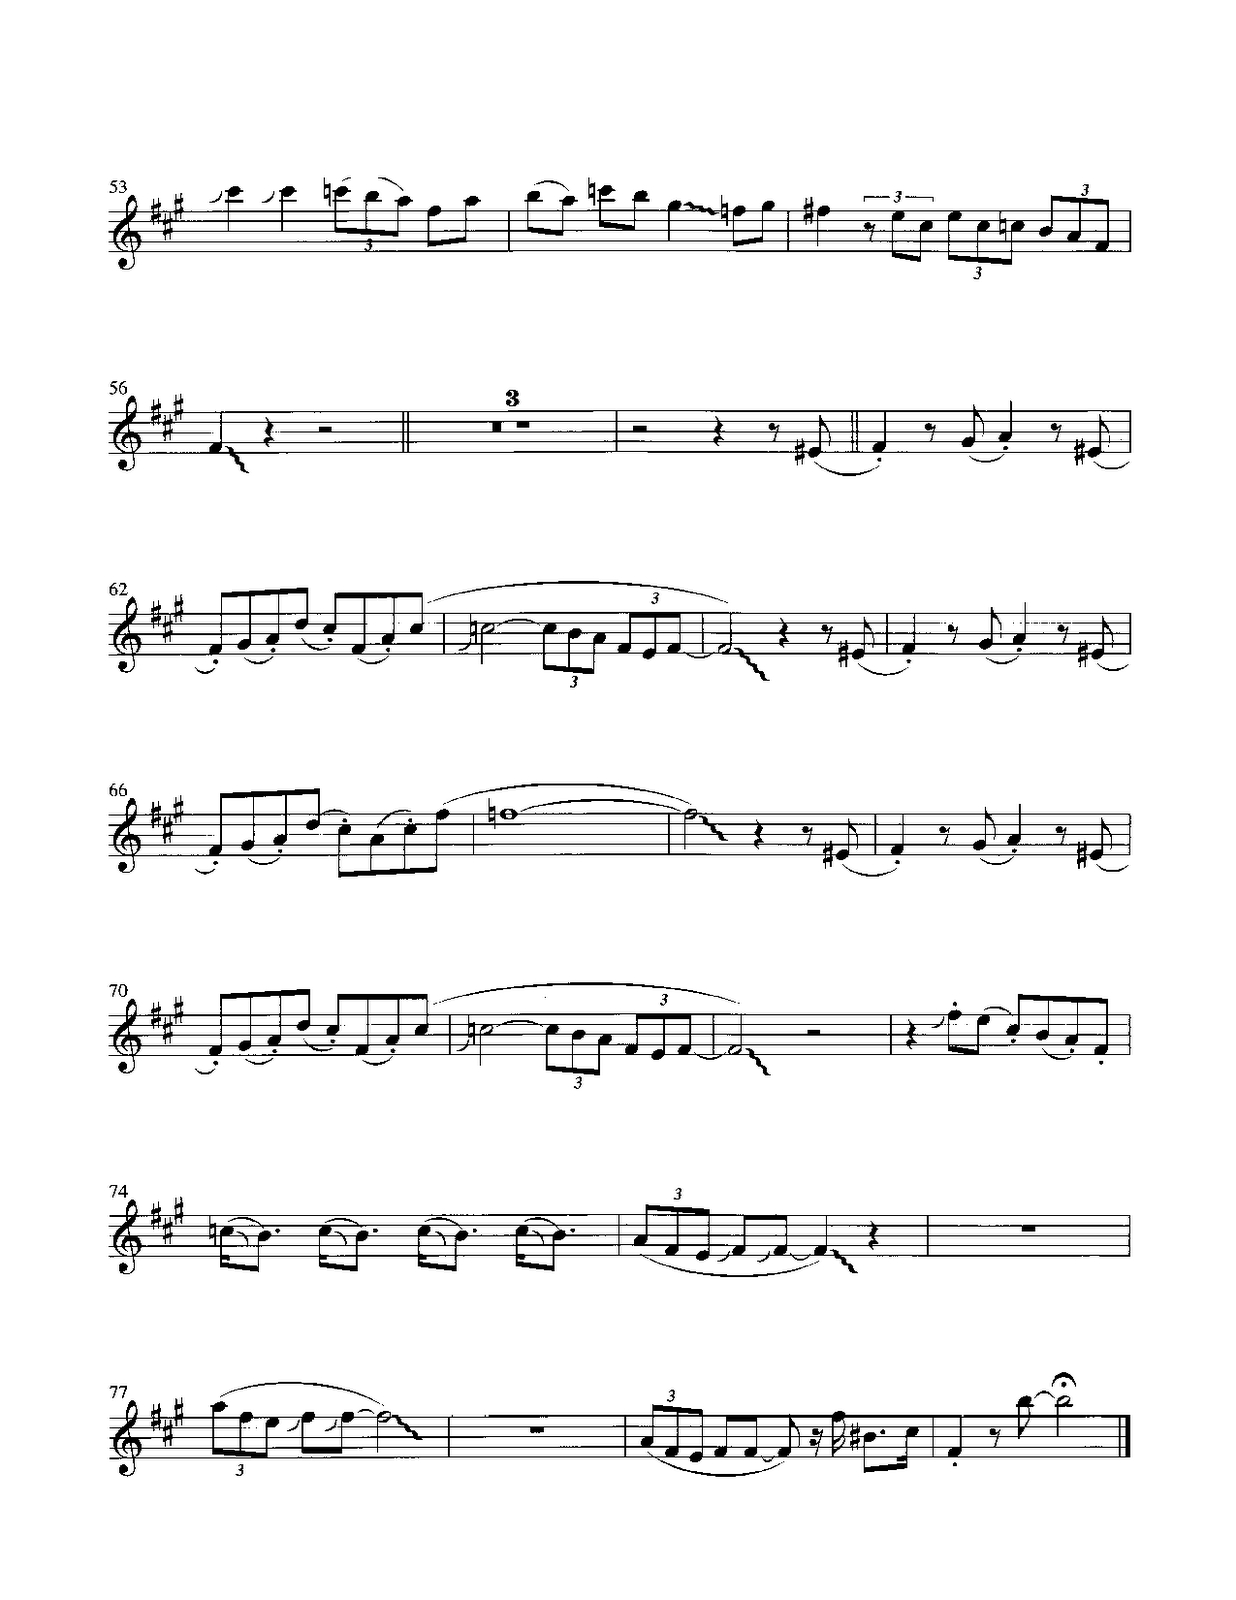 Pink Panther - Henry Mancini Score And Track (Sheet Music Free - Free Printable Trumpet Sheet Music Pink Panther